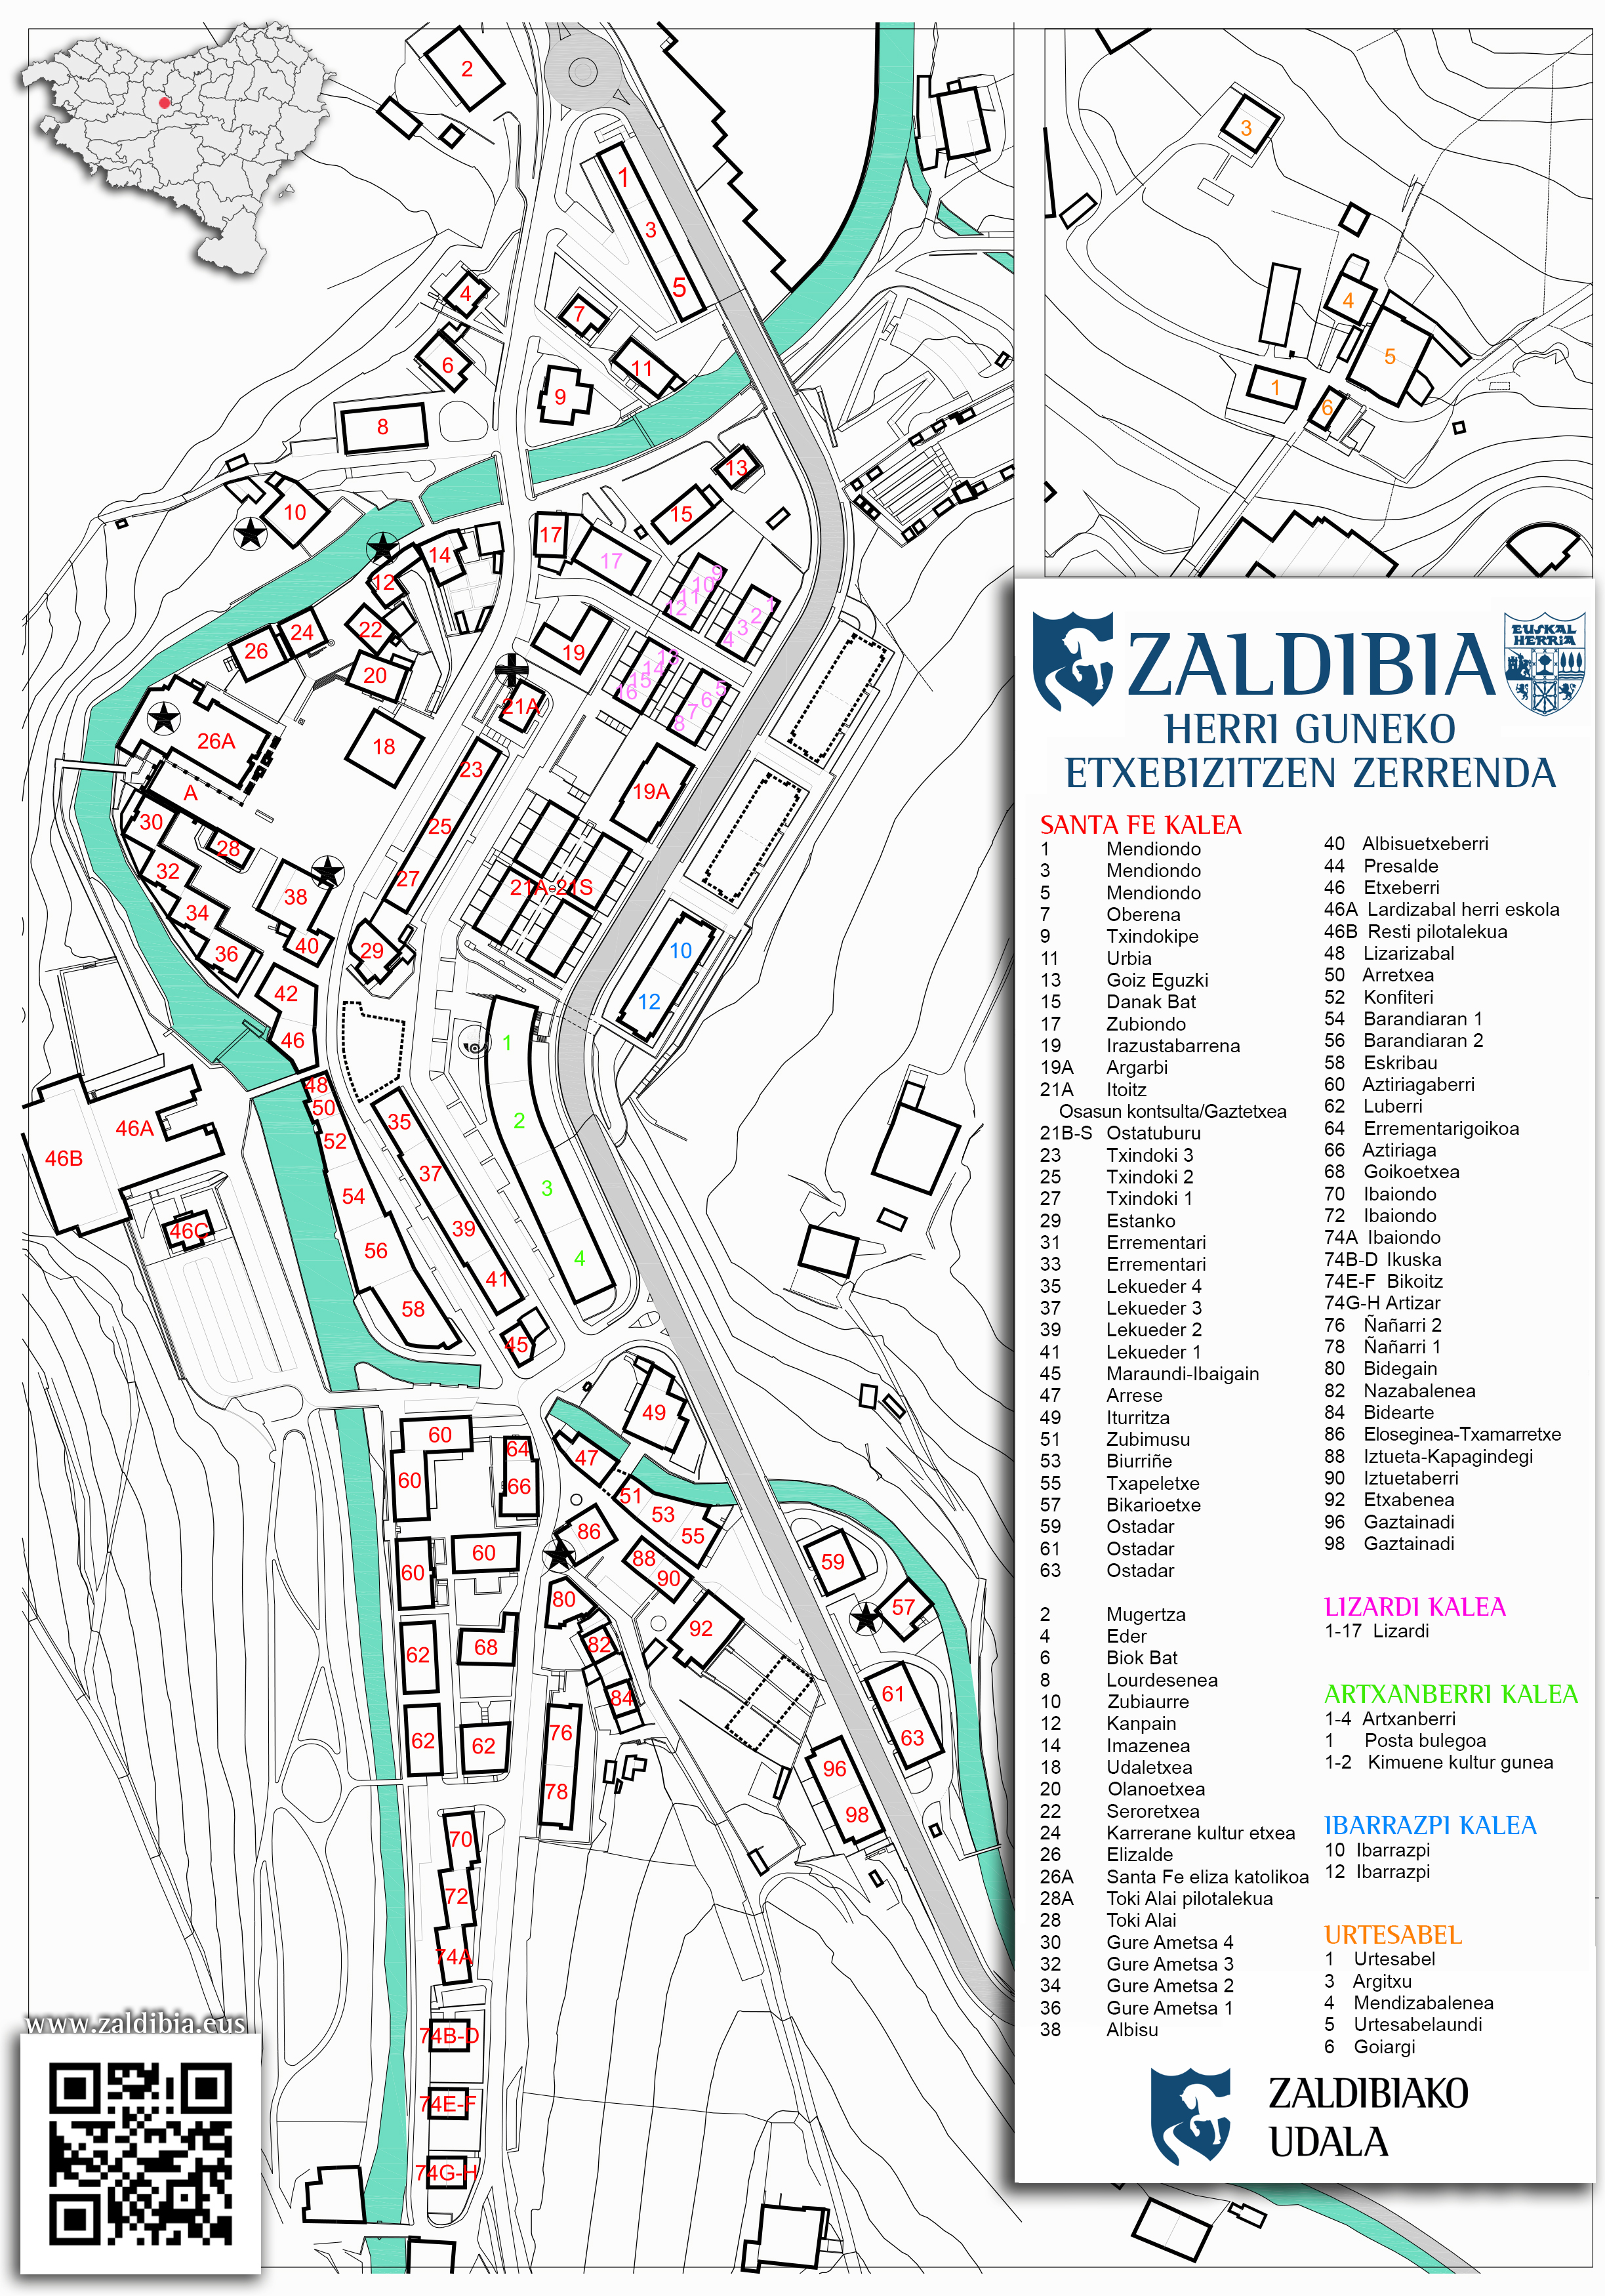 ZALDIBIA-KALE-IZENDEGIA-2021.jpg